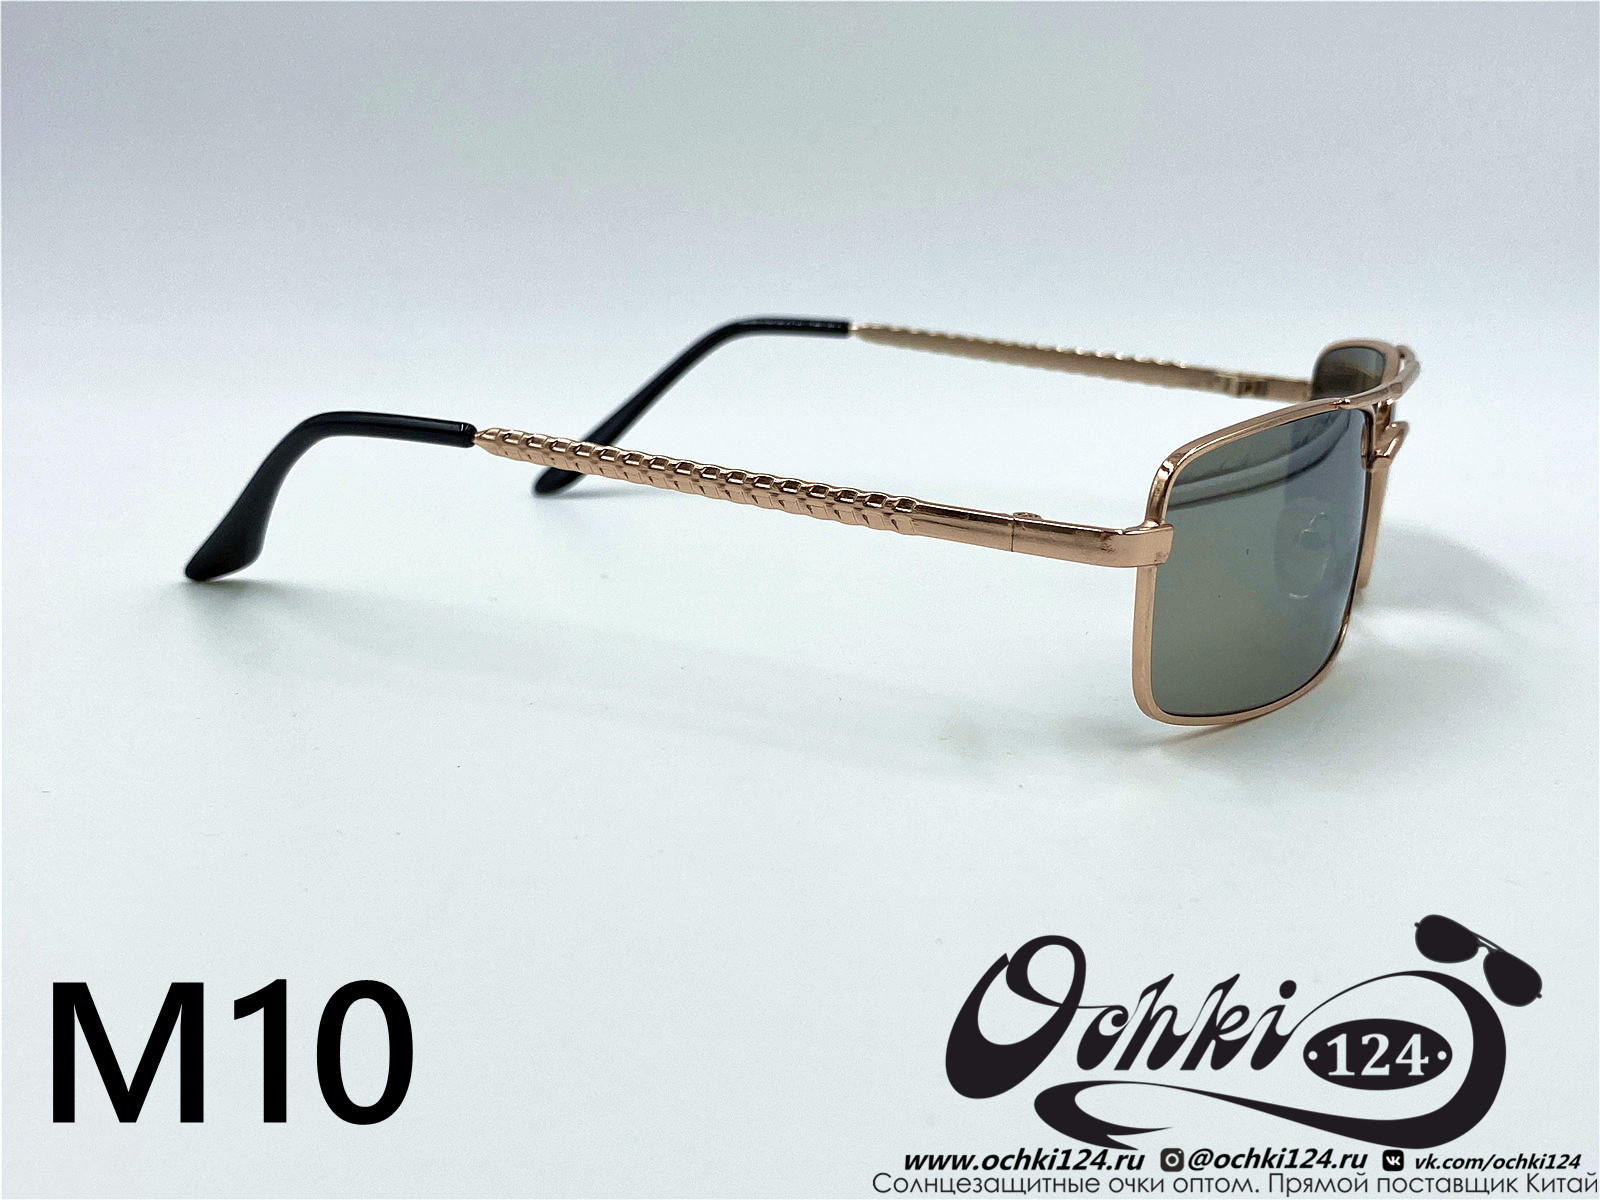  Солнцезащитные очки картинка 2022 Мужские Узкие и длинные KaiFeng M10-6 